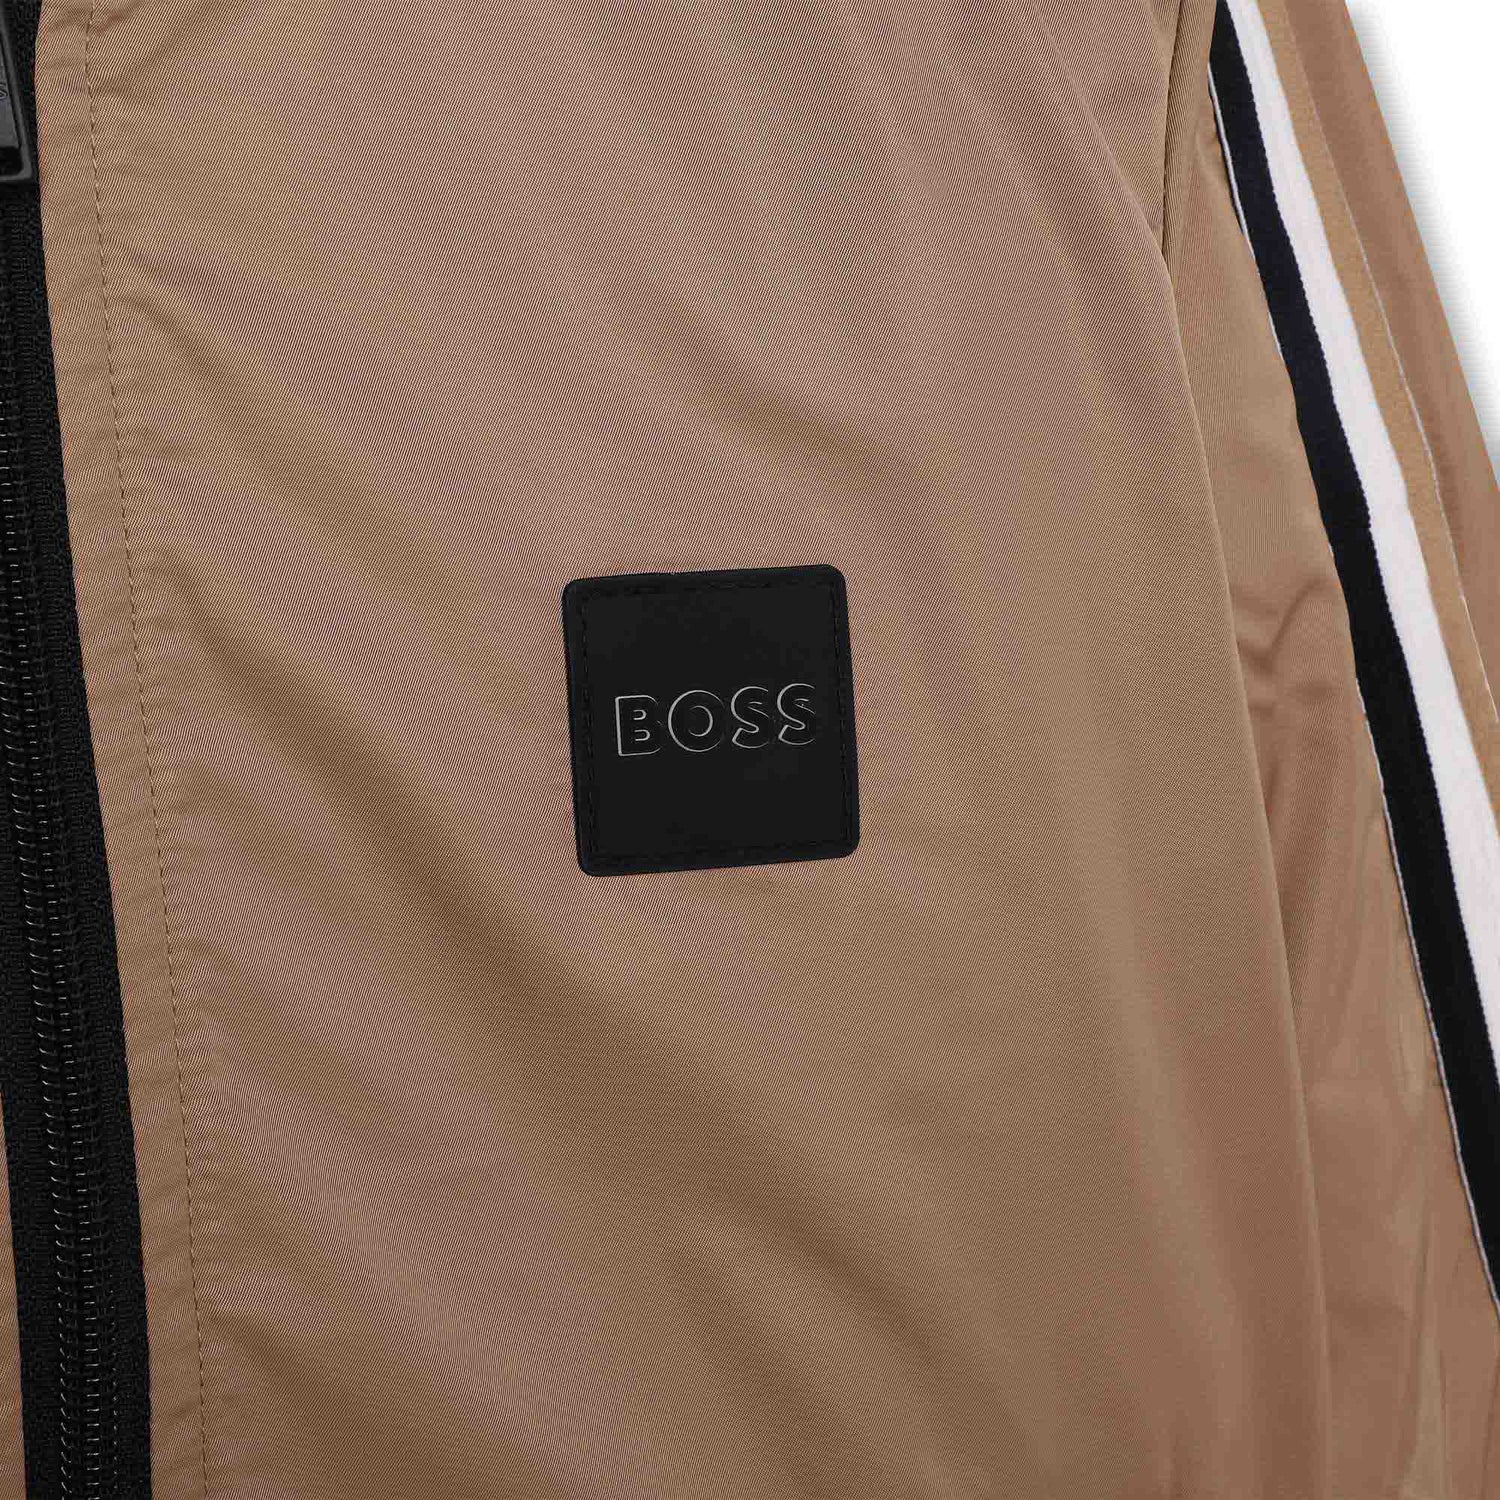 Hugo Boss Jacket Style: J26508